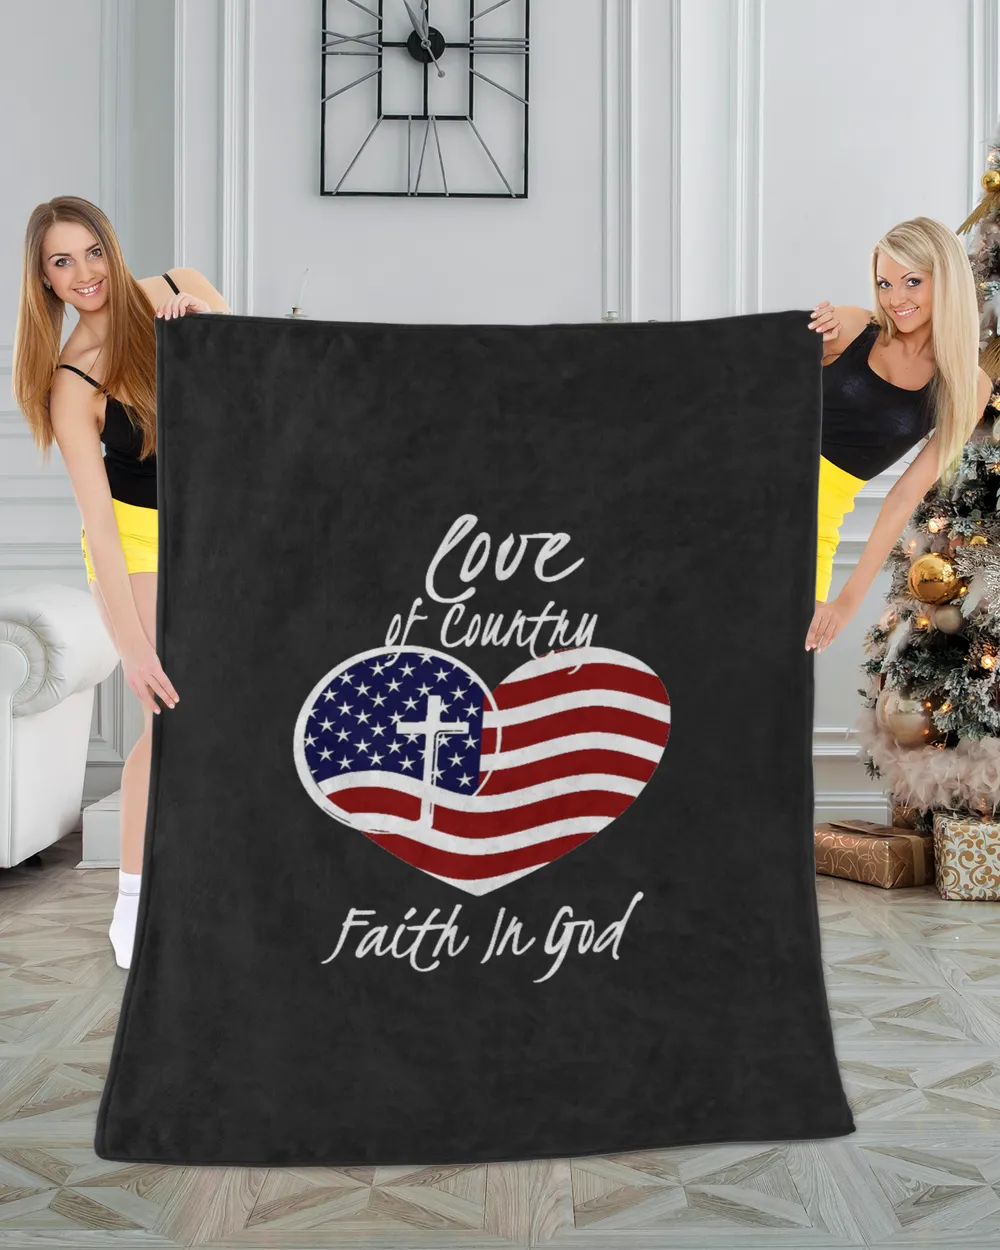 Patriotic Christian Faith In God Heart Cross American Flag T-Shirt